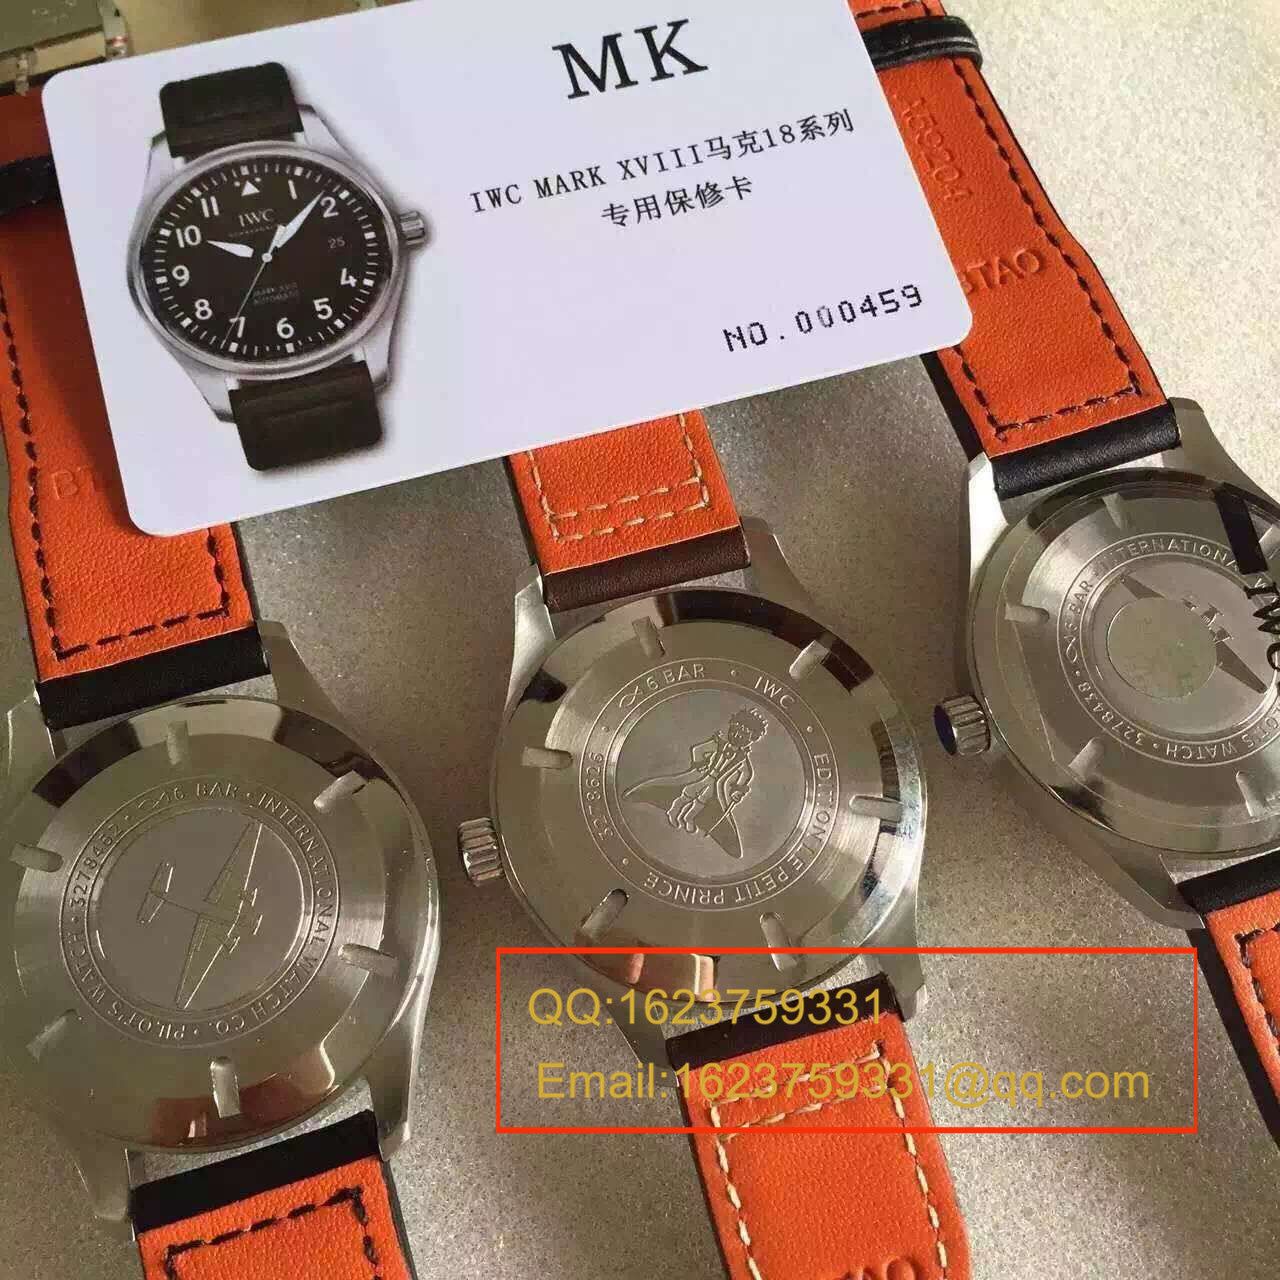 【独家视频测评MK厂1:1顶级精仿手表】万国飞行员马克十八飞行员腕表系列IW327011腕表 / WG243